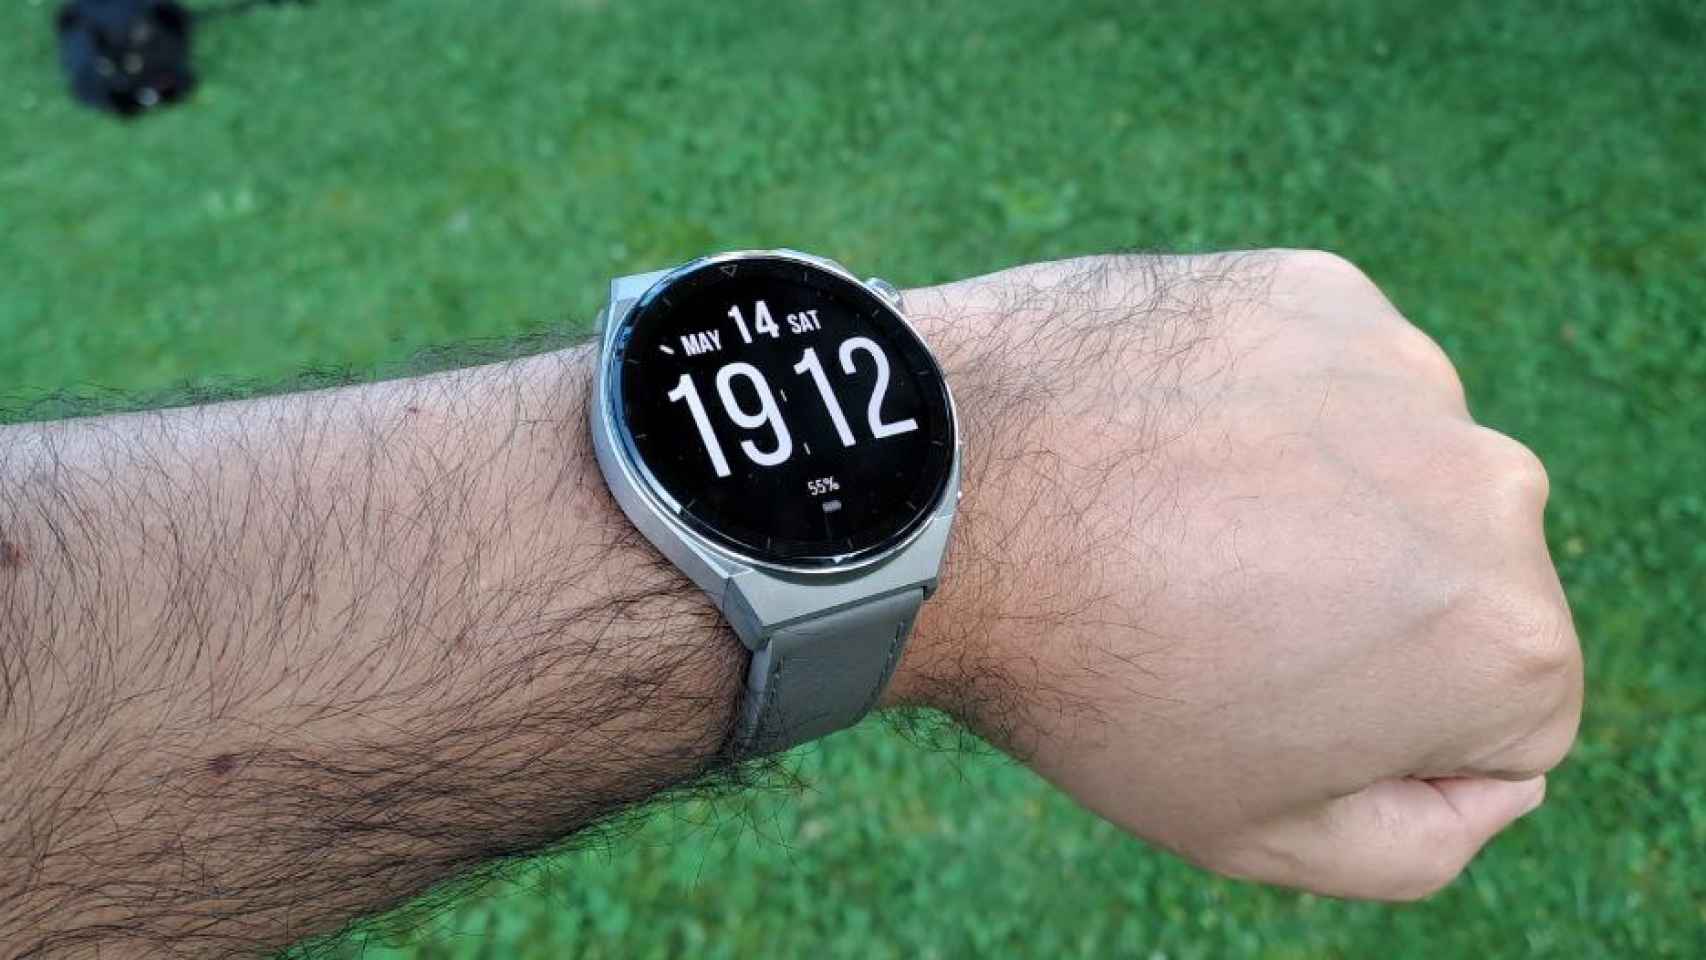 He probado el nuevo Huawei Watch GT 3 Pro: un reloj con diseño